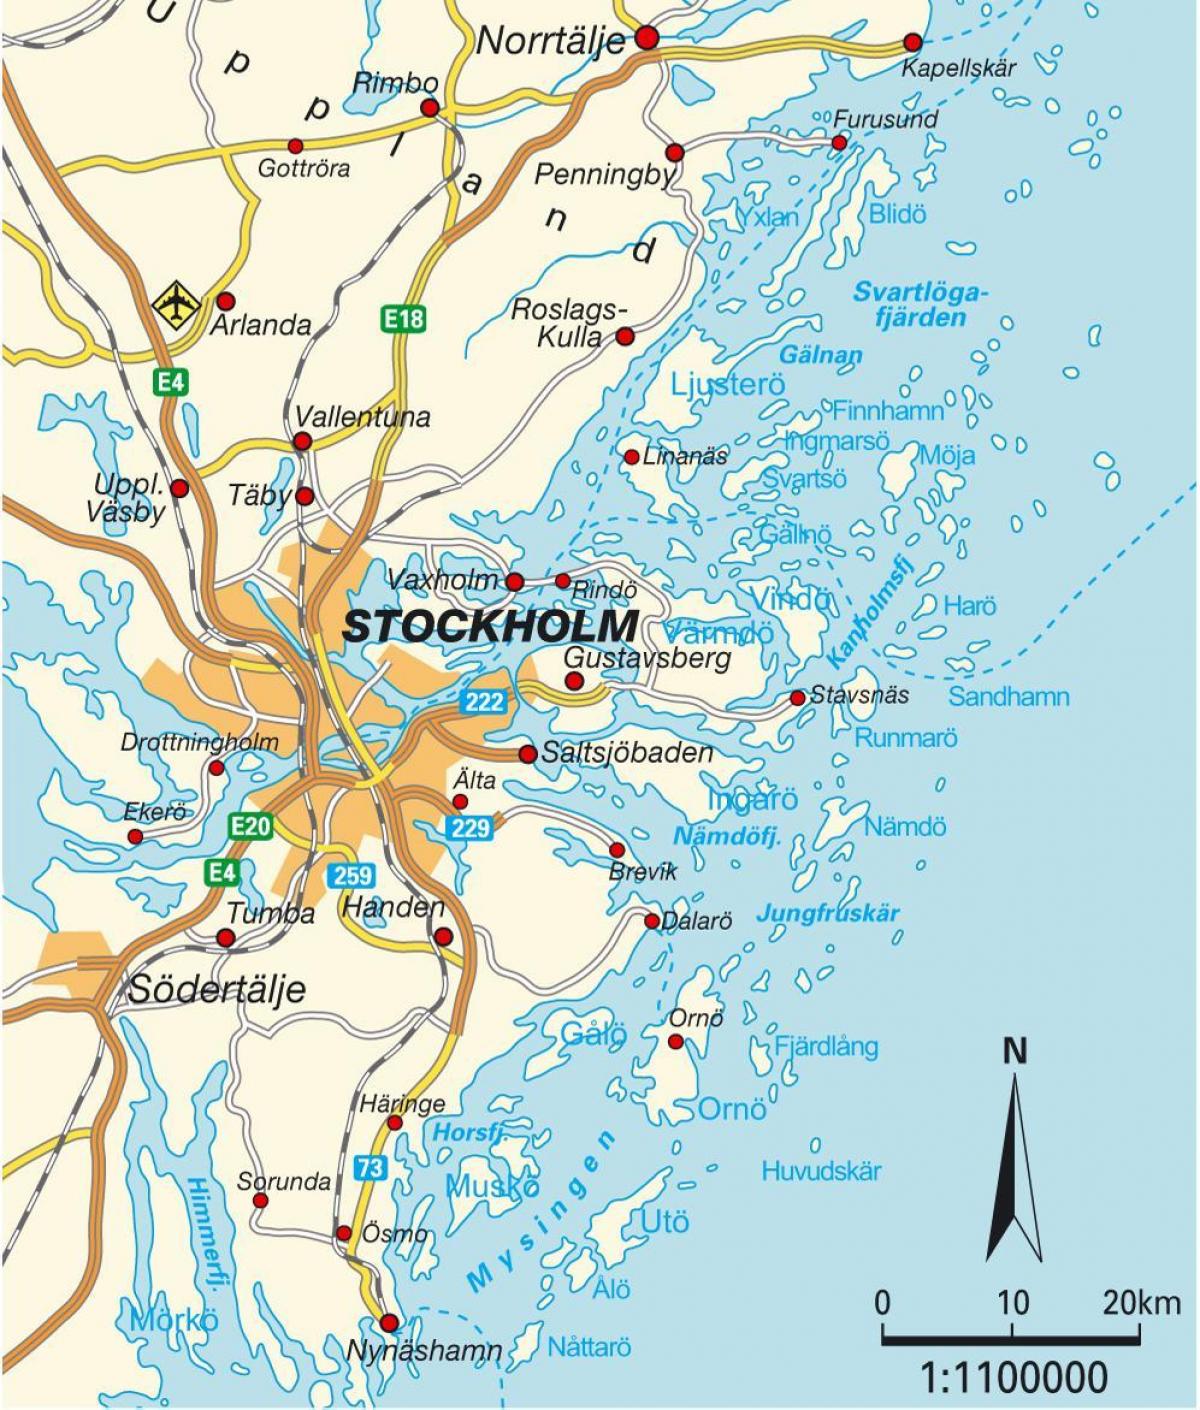 ストックホルムスウェーデンの都市地図